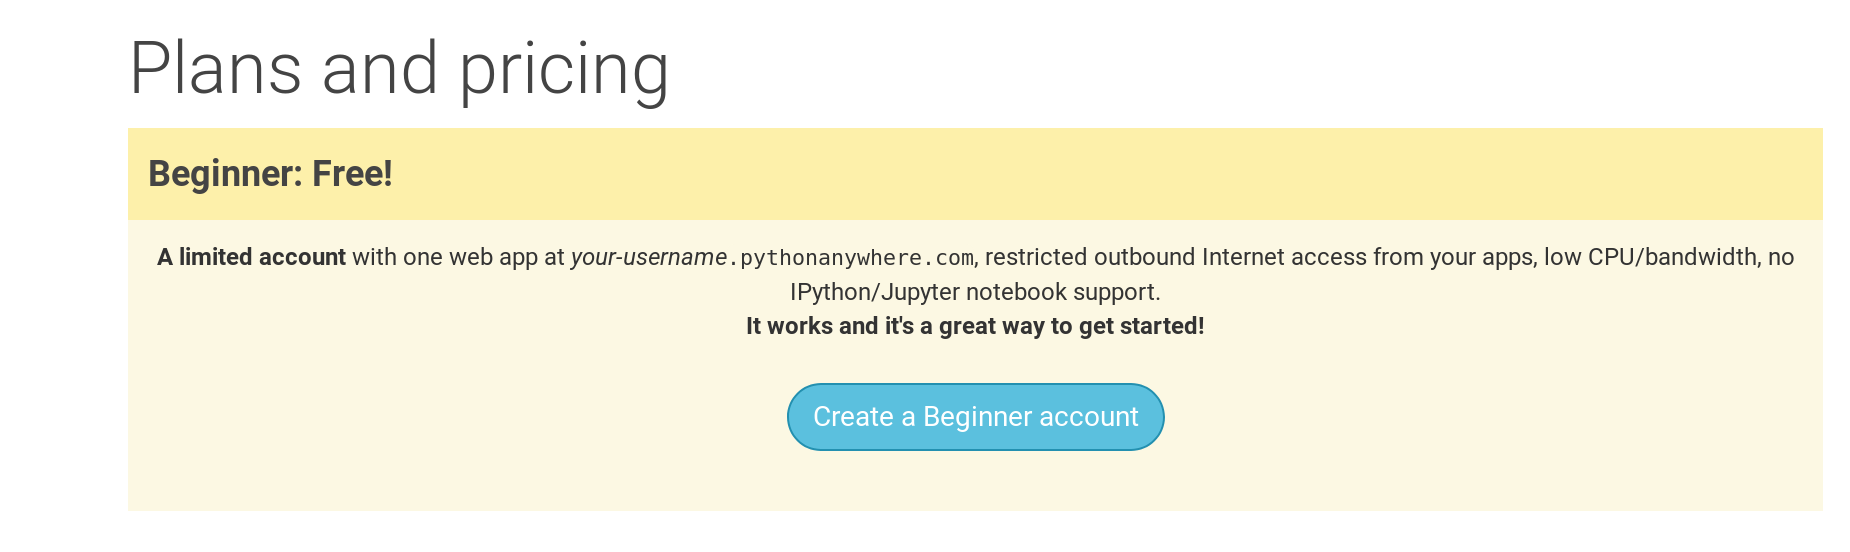 Страницата за регистрация в PythonAnywhere показва бутон за създаване на безплатен акаунт за начинаещи